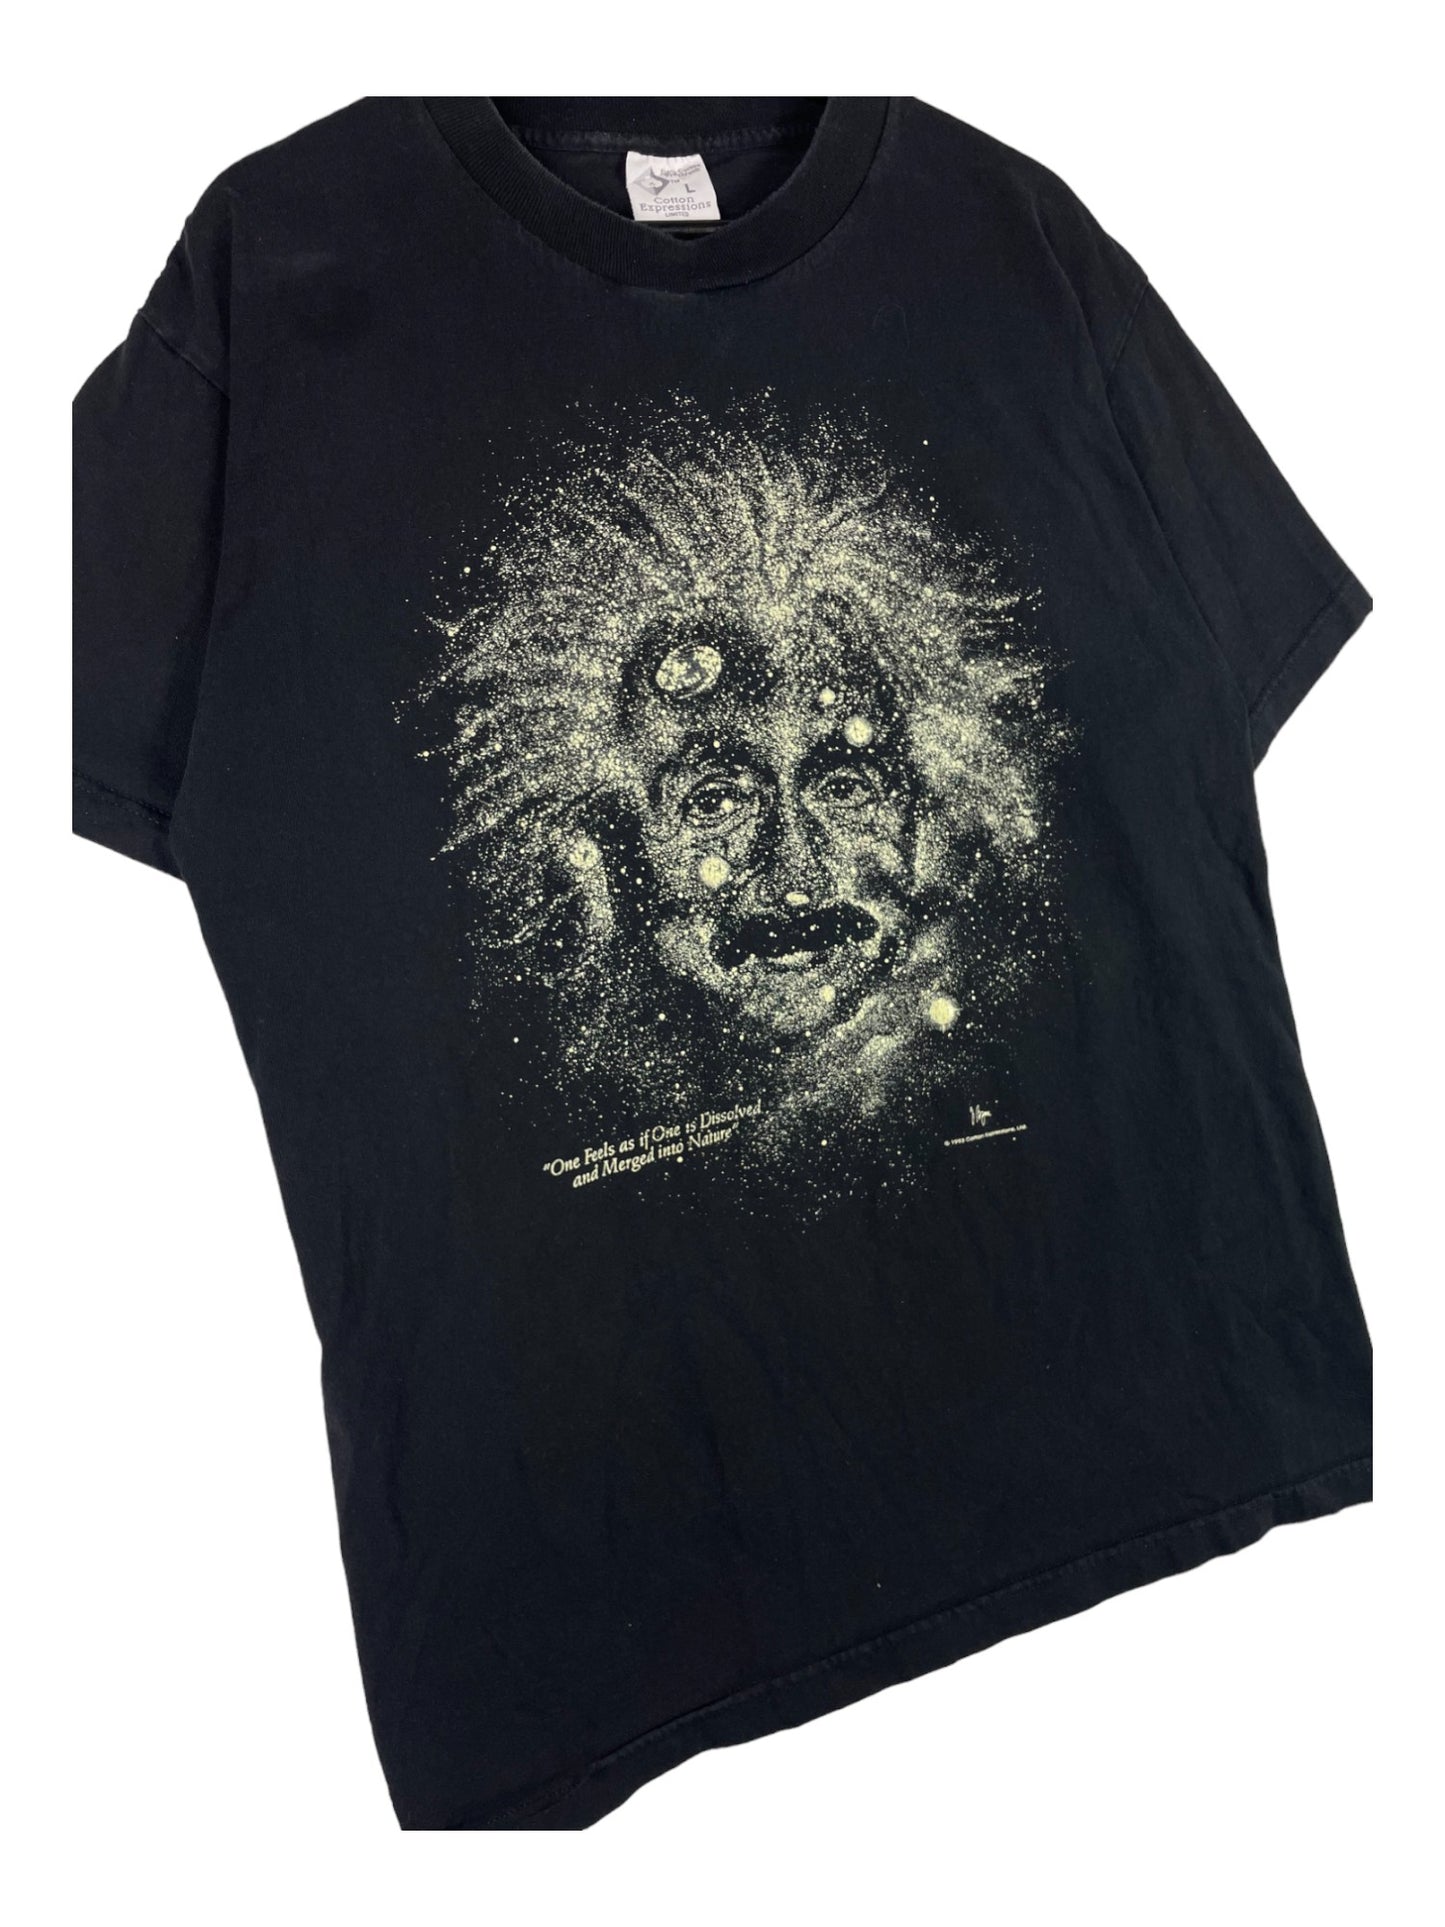 Einstein T-Shirt